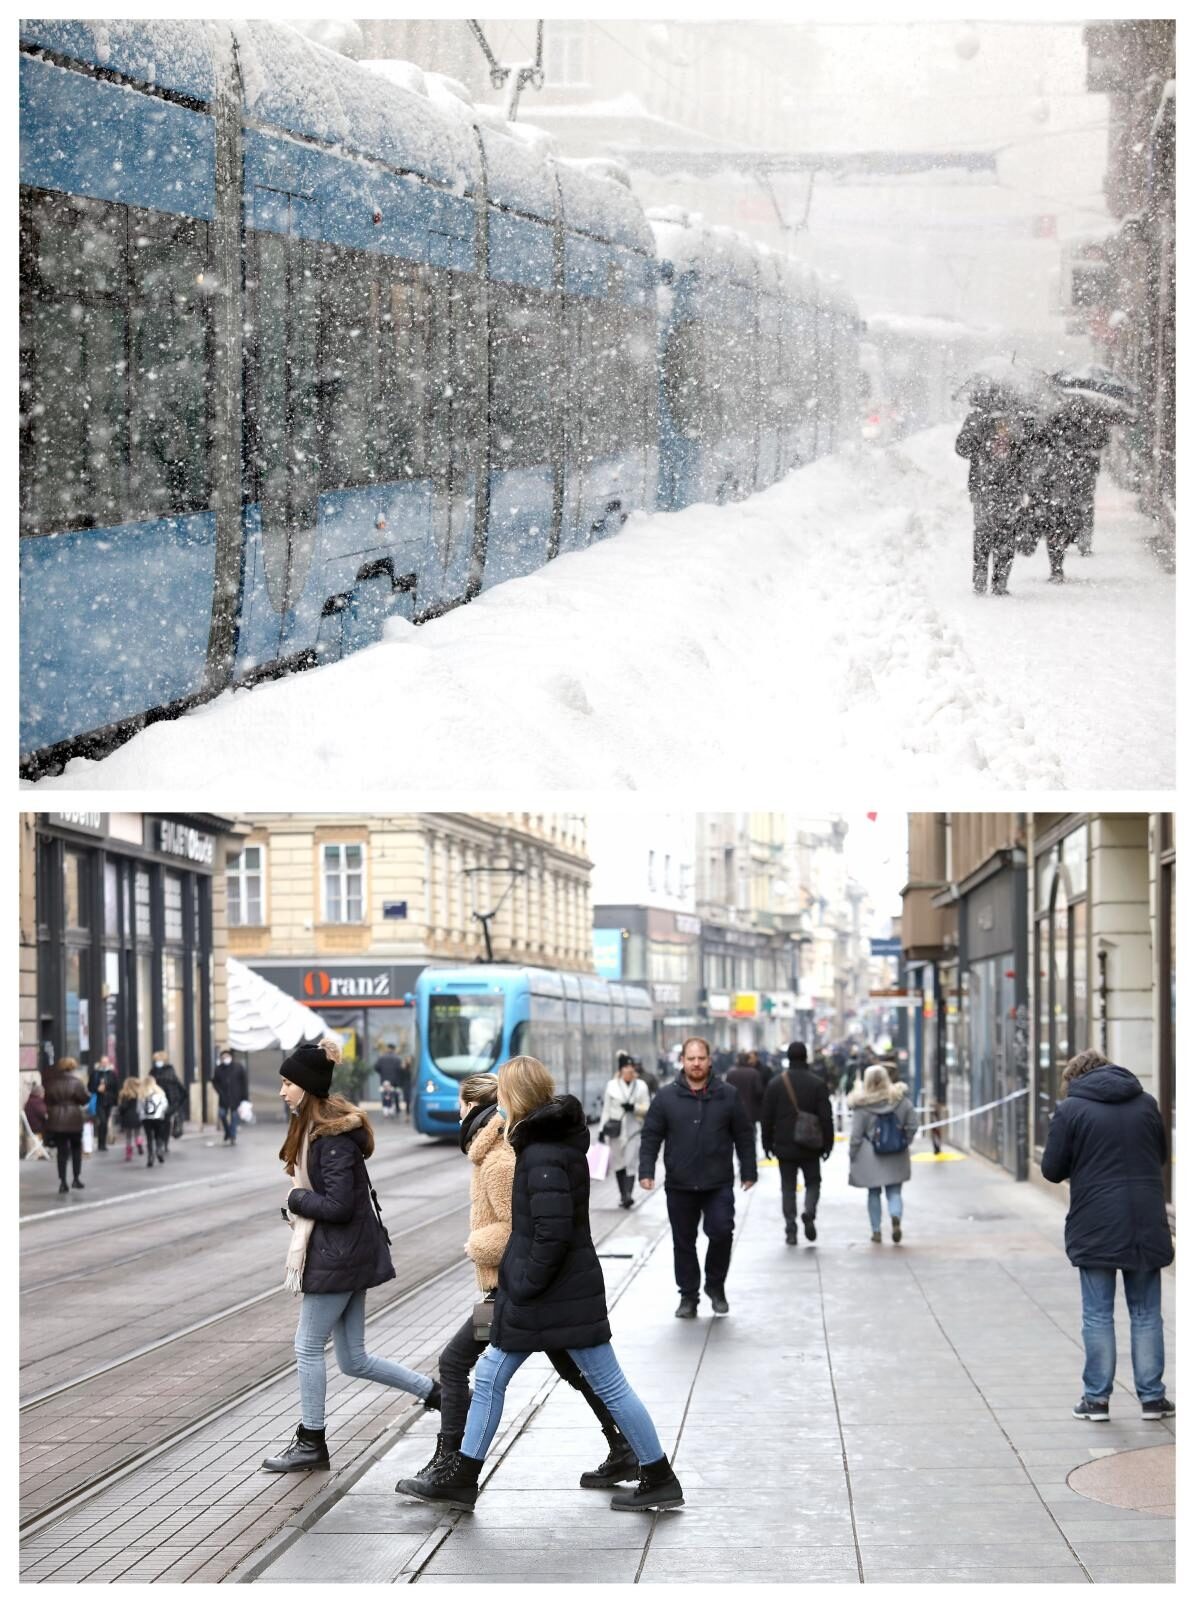 Na današnji dan prisjećamo se snježne mećave koja je zahvatila Zagreb prije točno osam godina